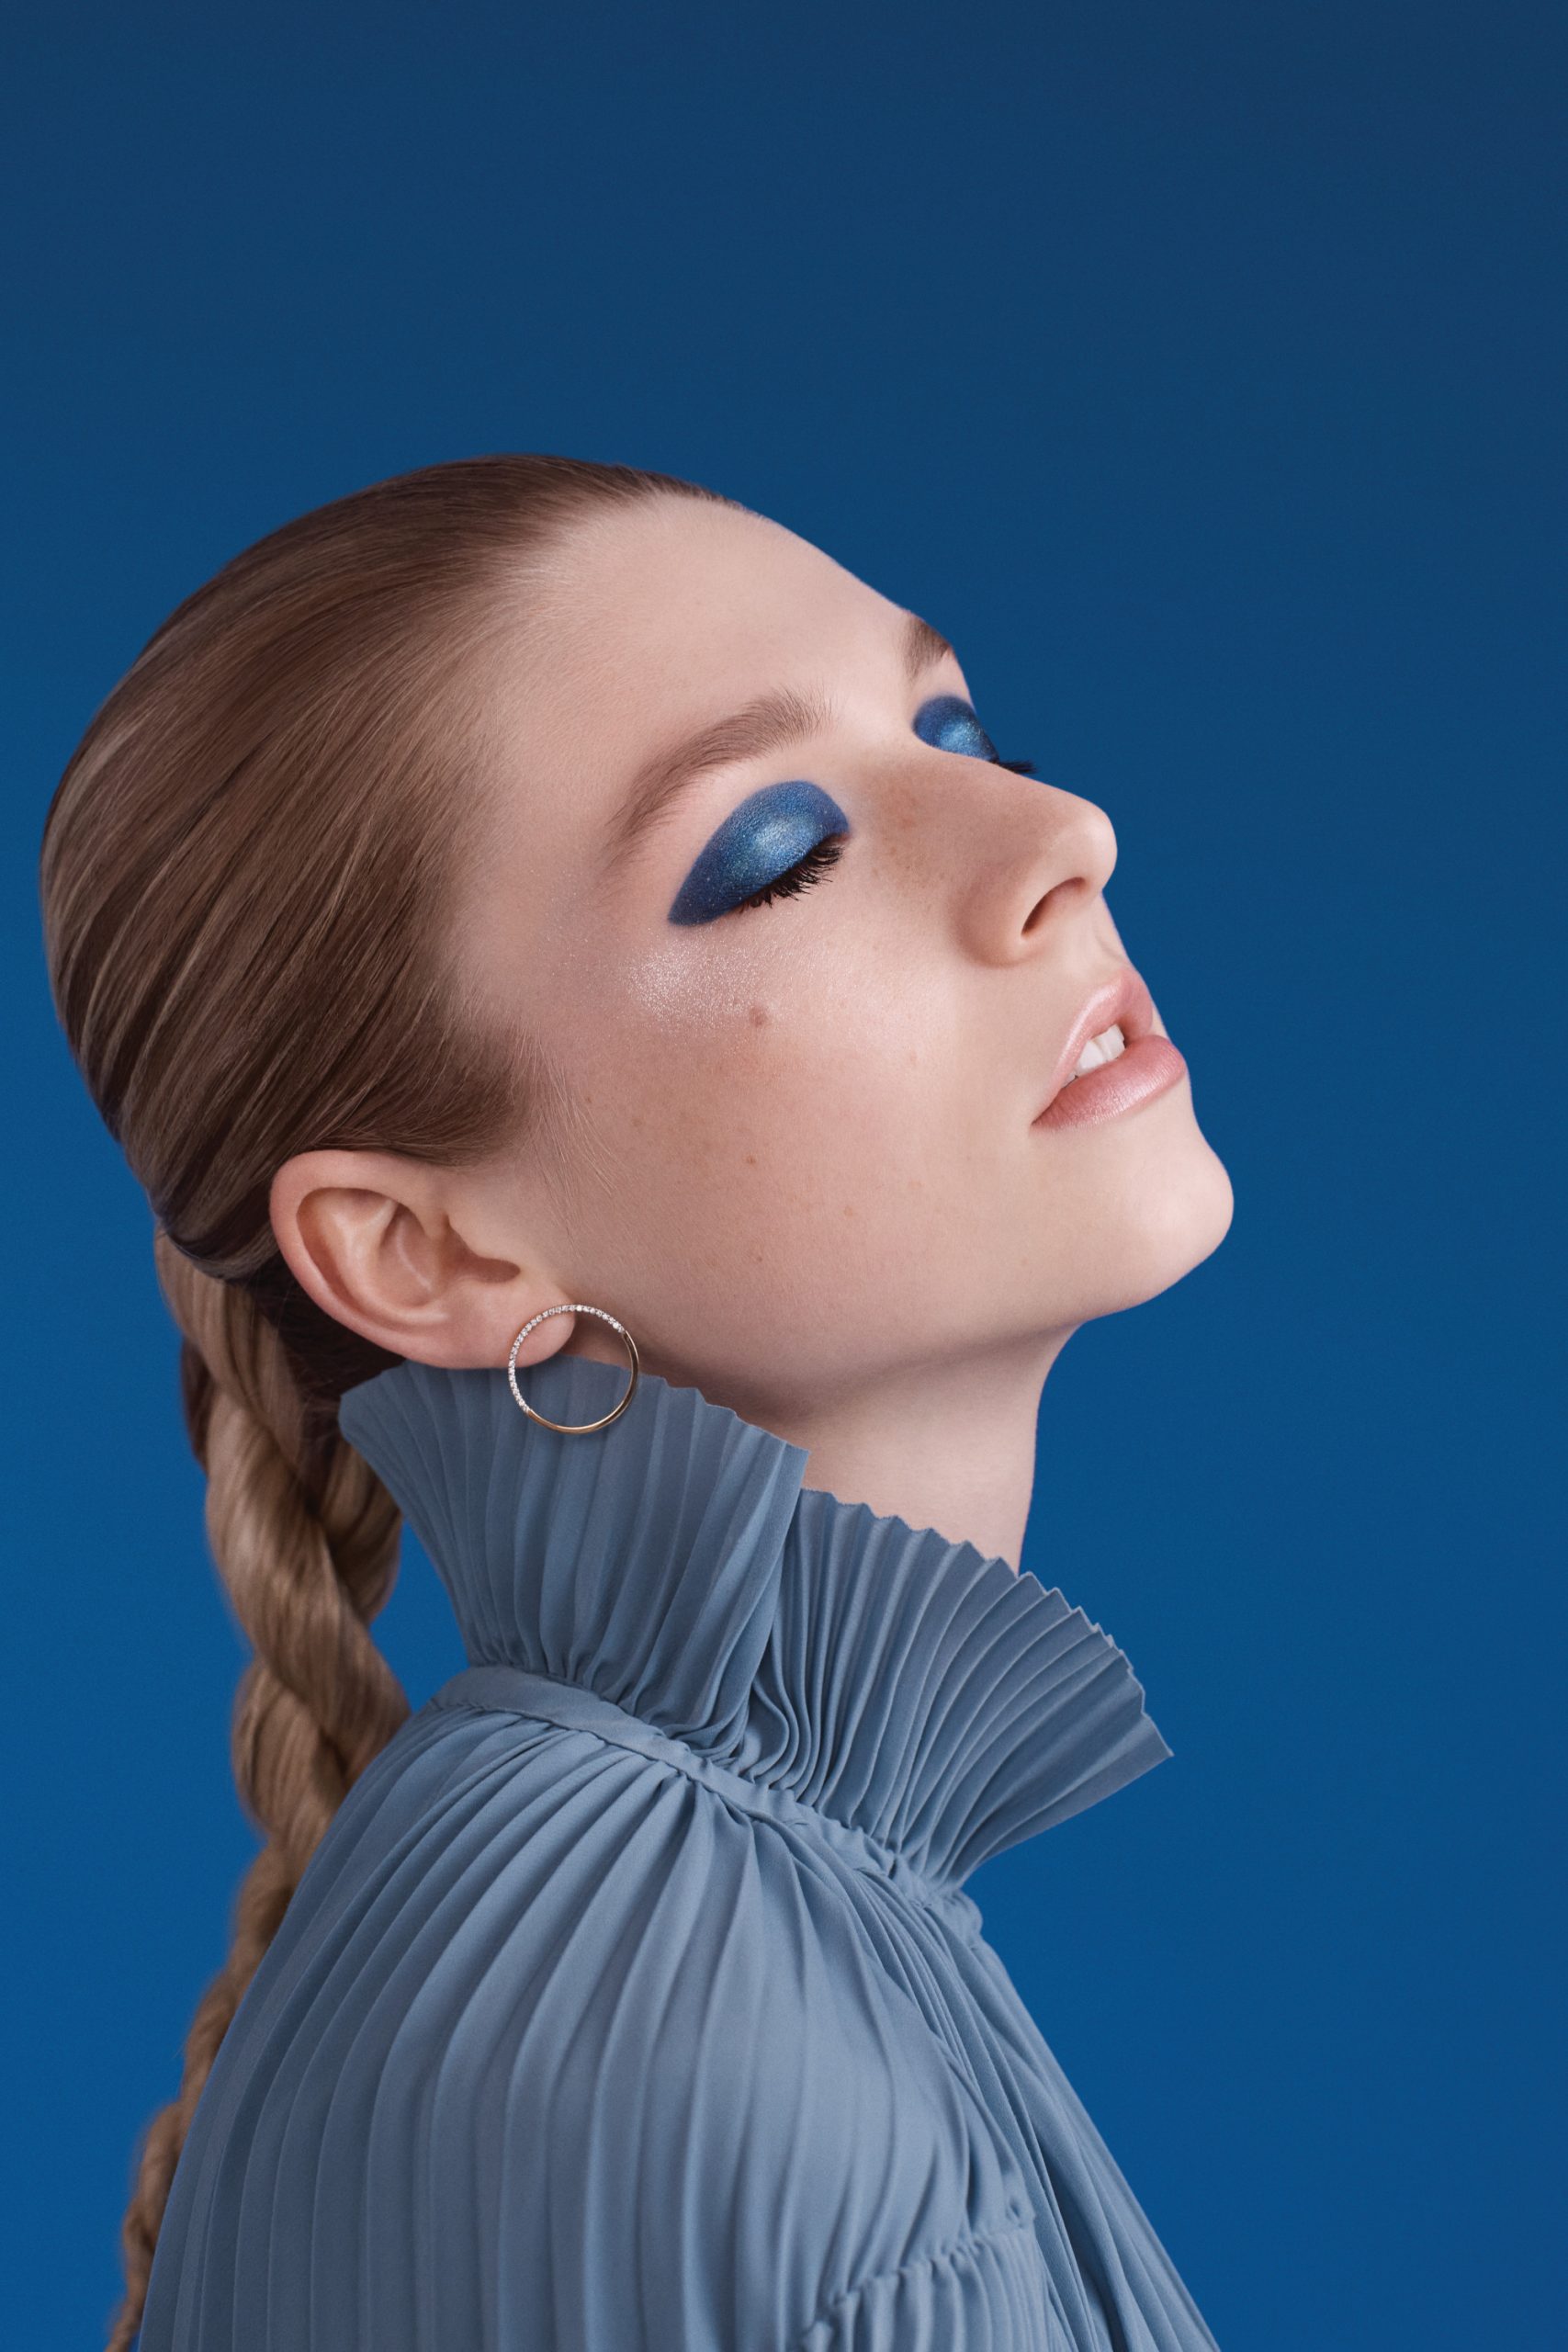 Η Shiseido ενώνει τη μελωδία με το μακιγιάζ